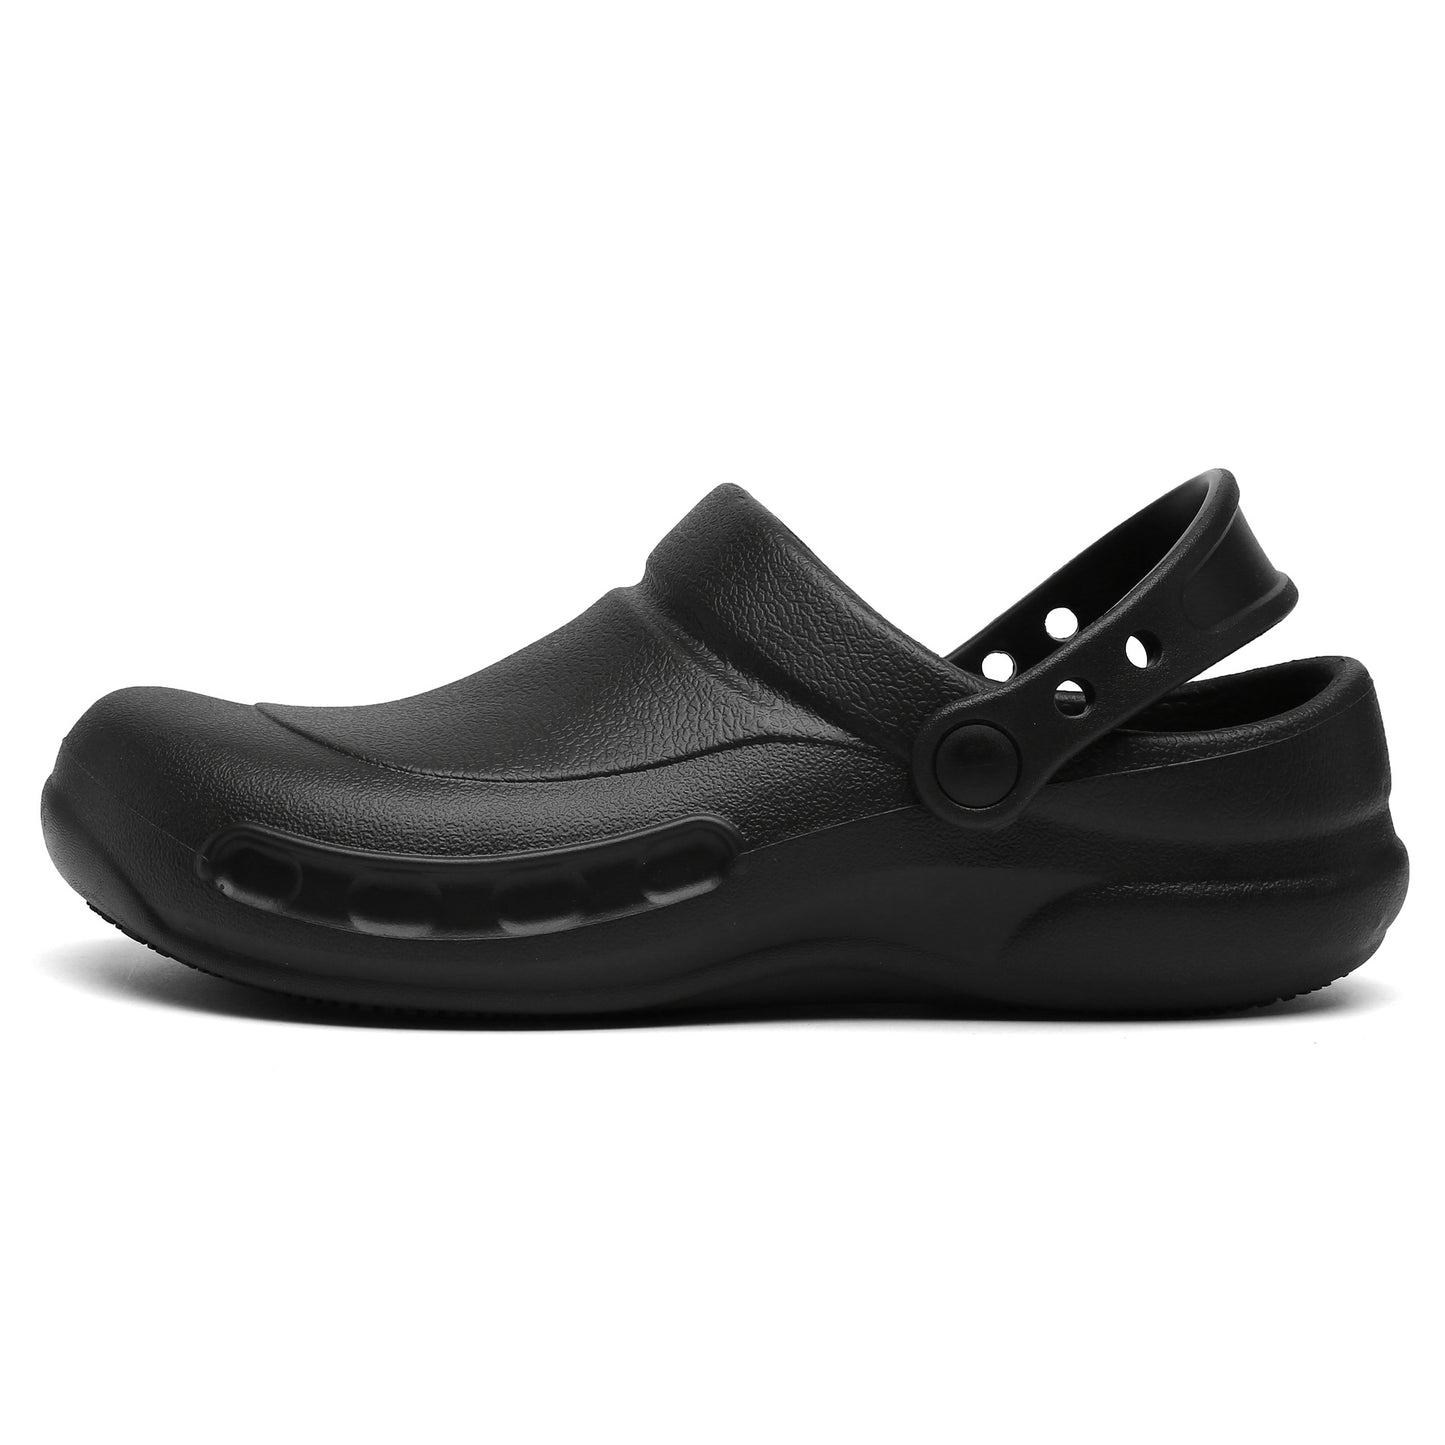 Slip Resistant Work Shoes, Crocs Unisex-Adult Bistro Clogs